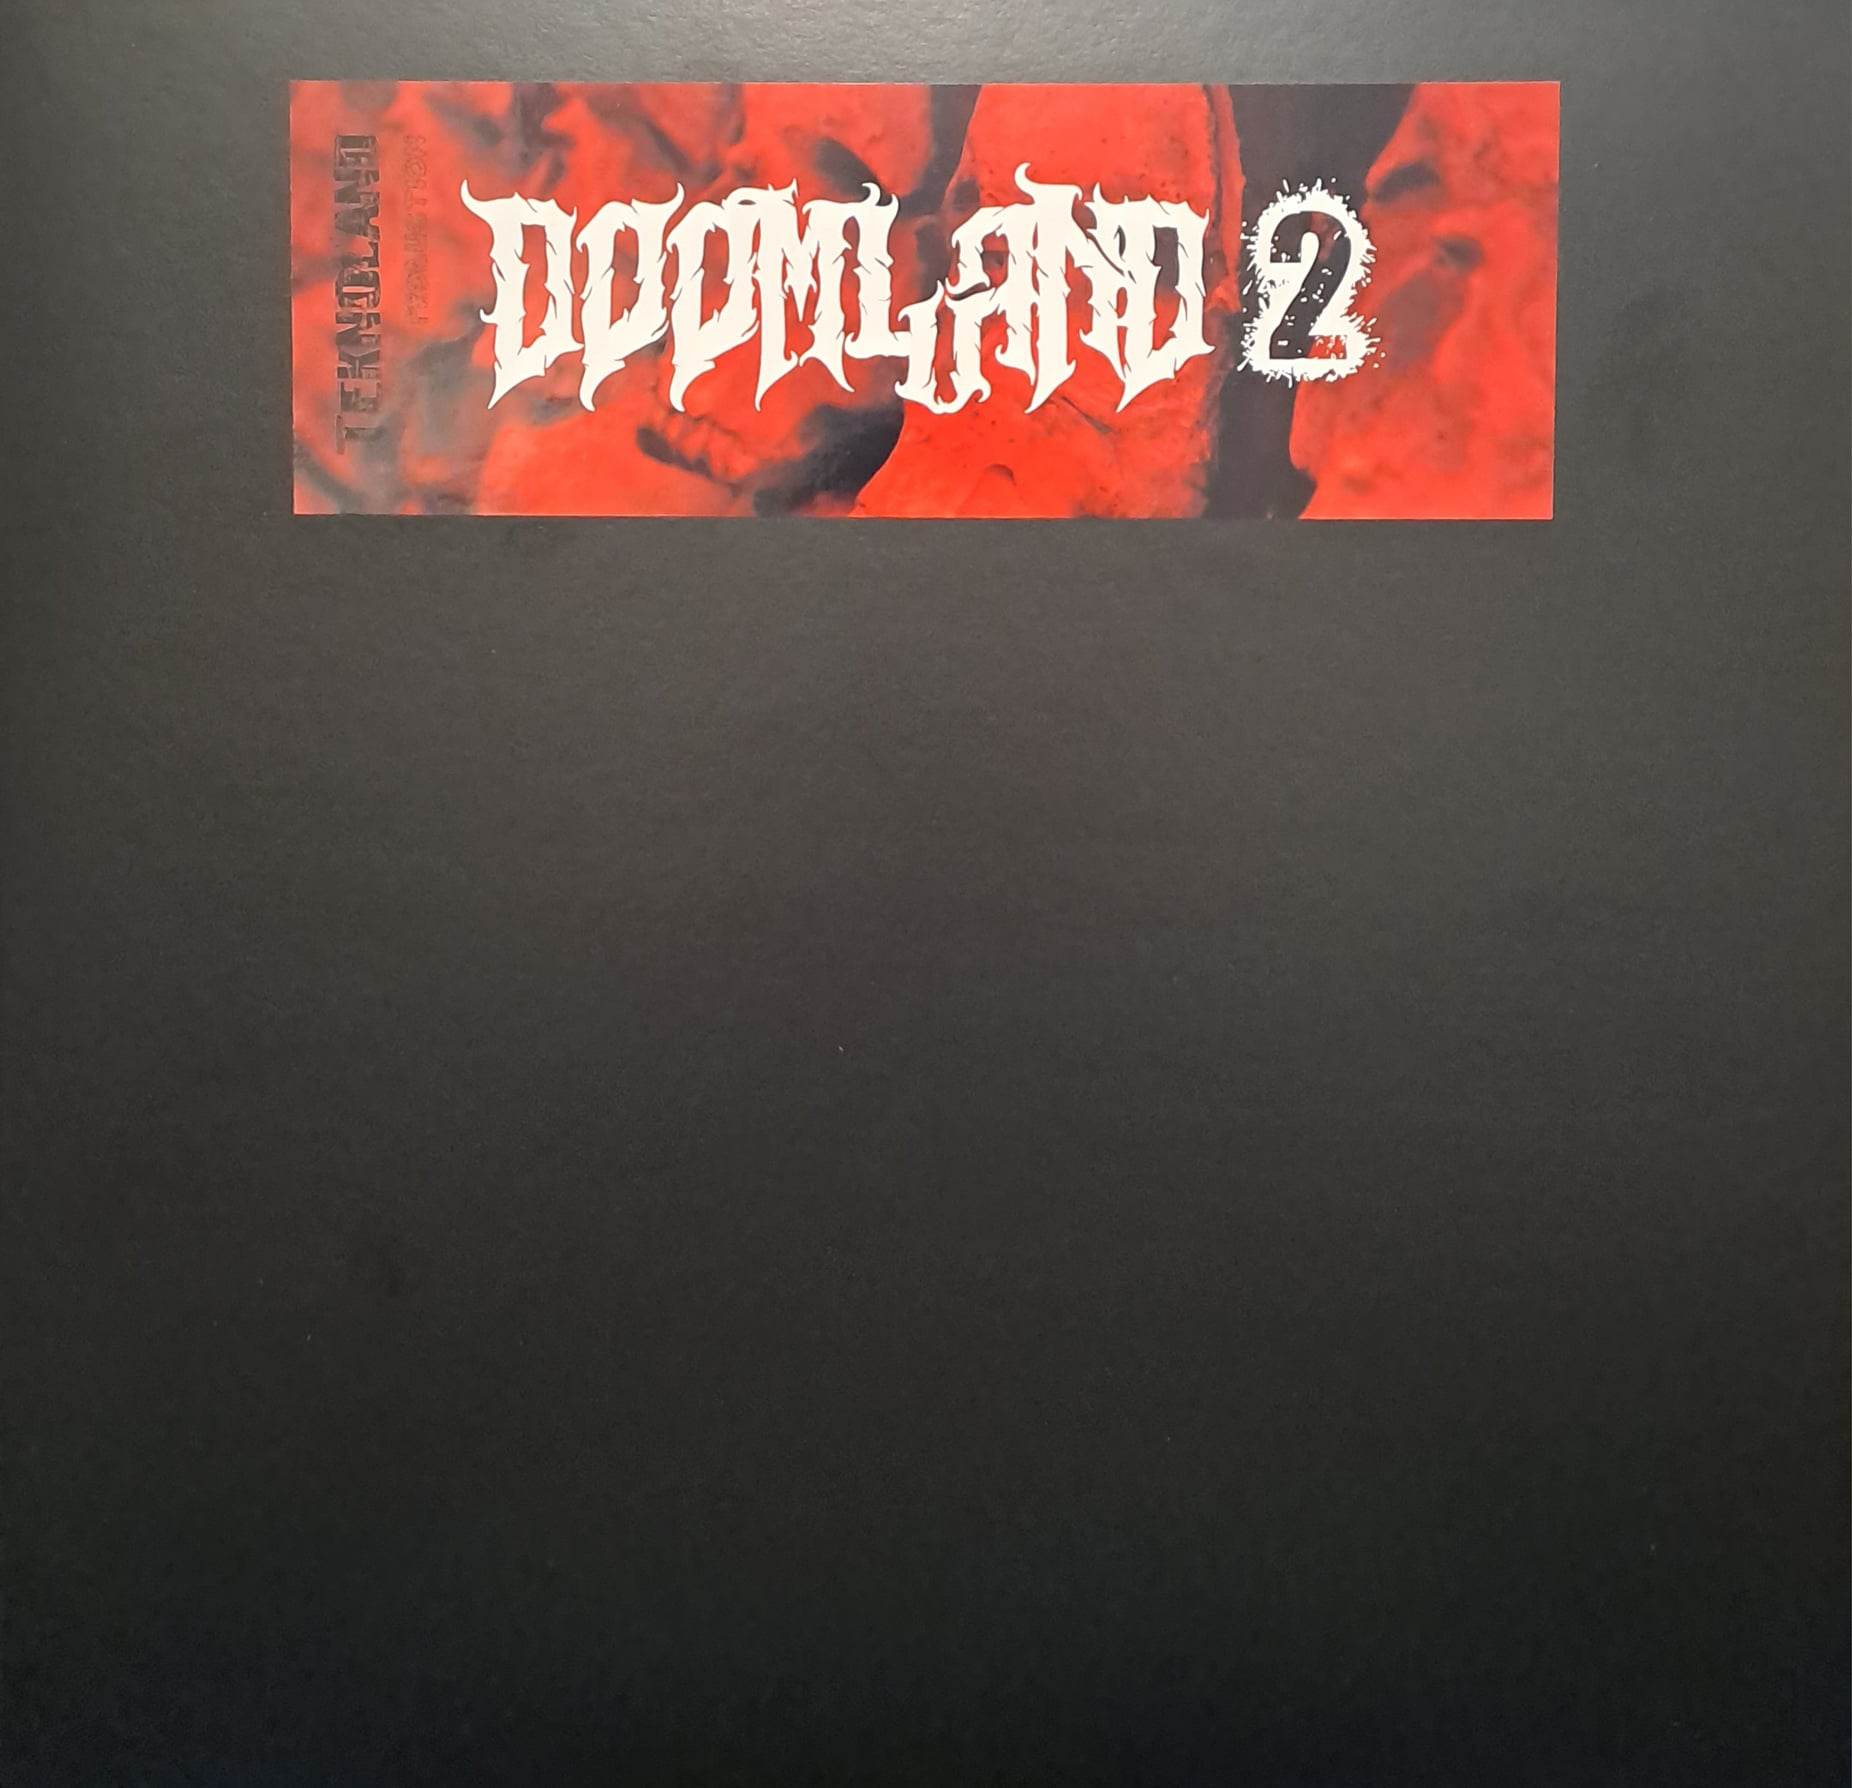 Doomland 02 (double album) - vinyle doomcore